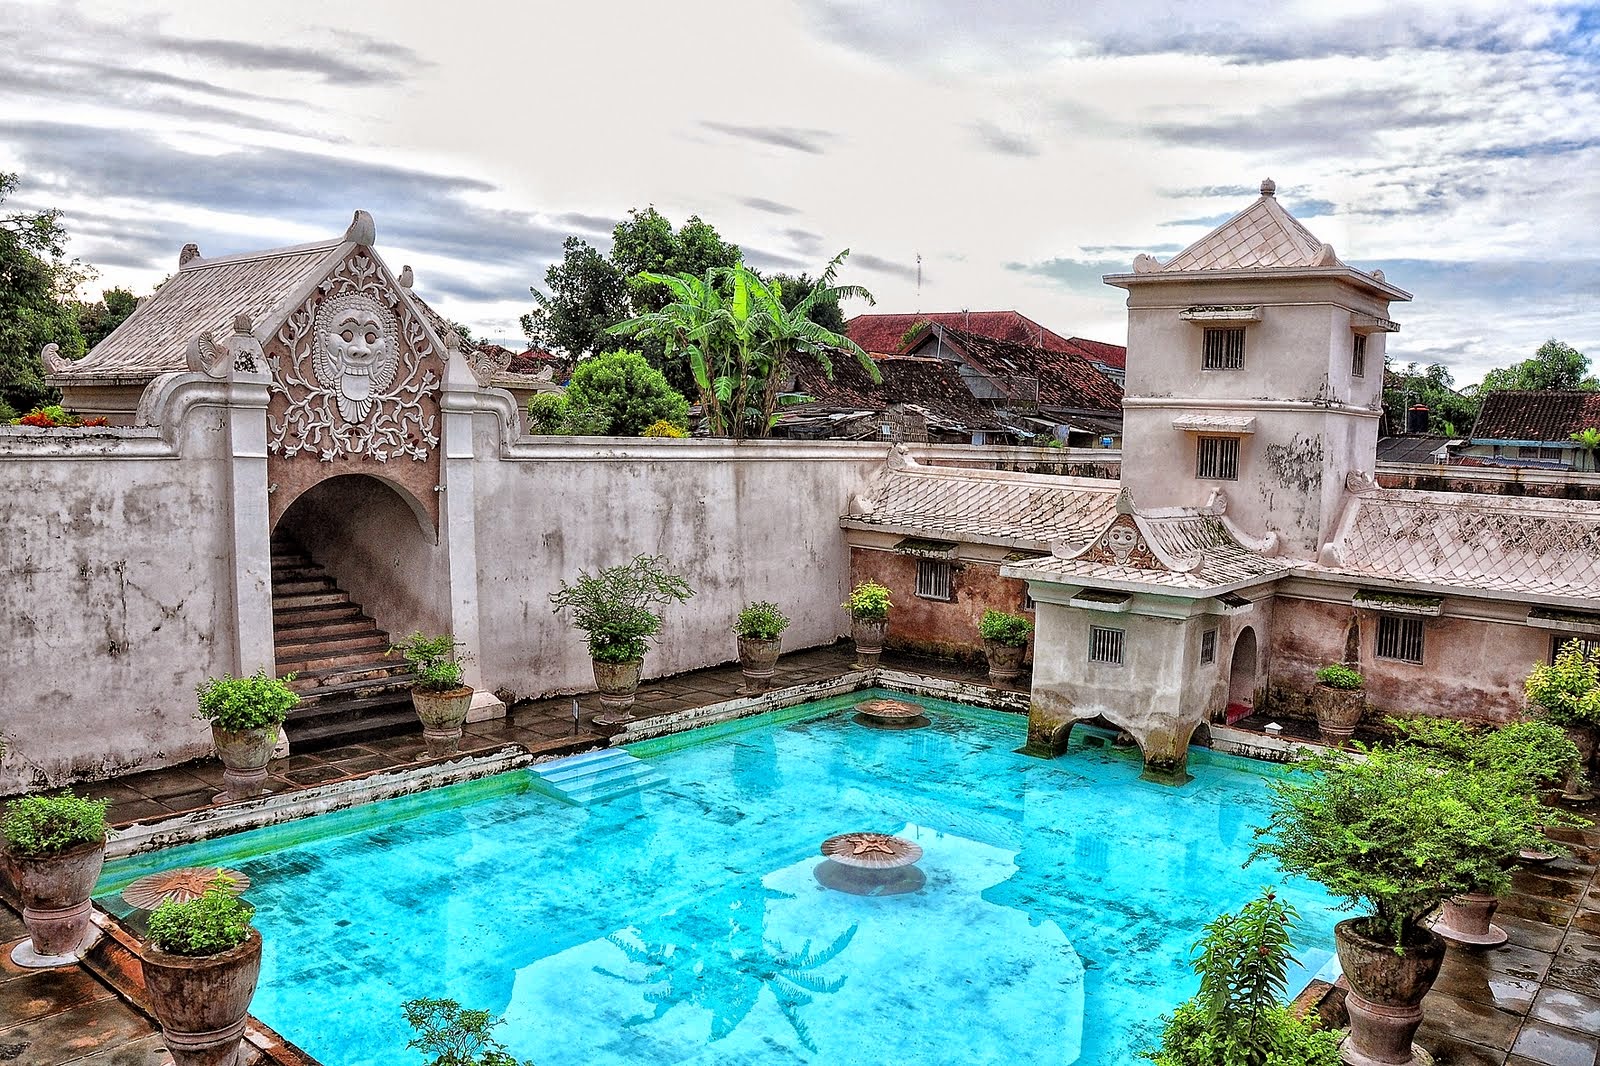 Wisata Seru Jogja - Destinasi wisata di Yogyakarta terbaru 2019